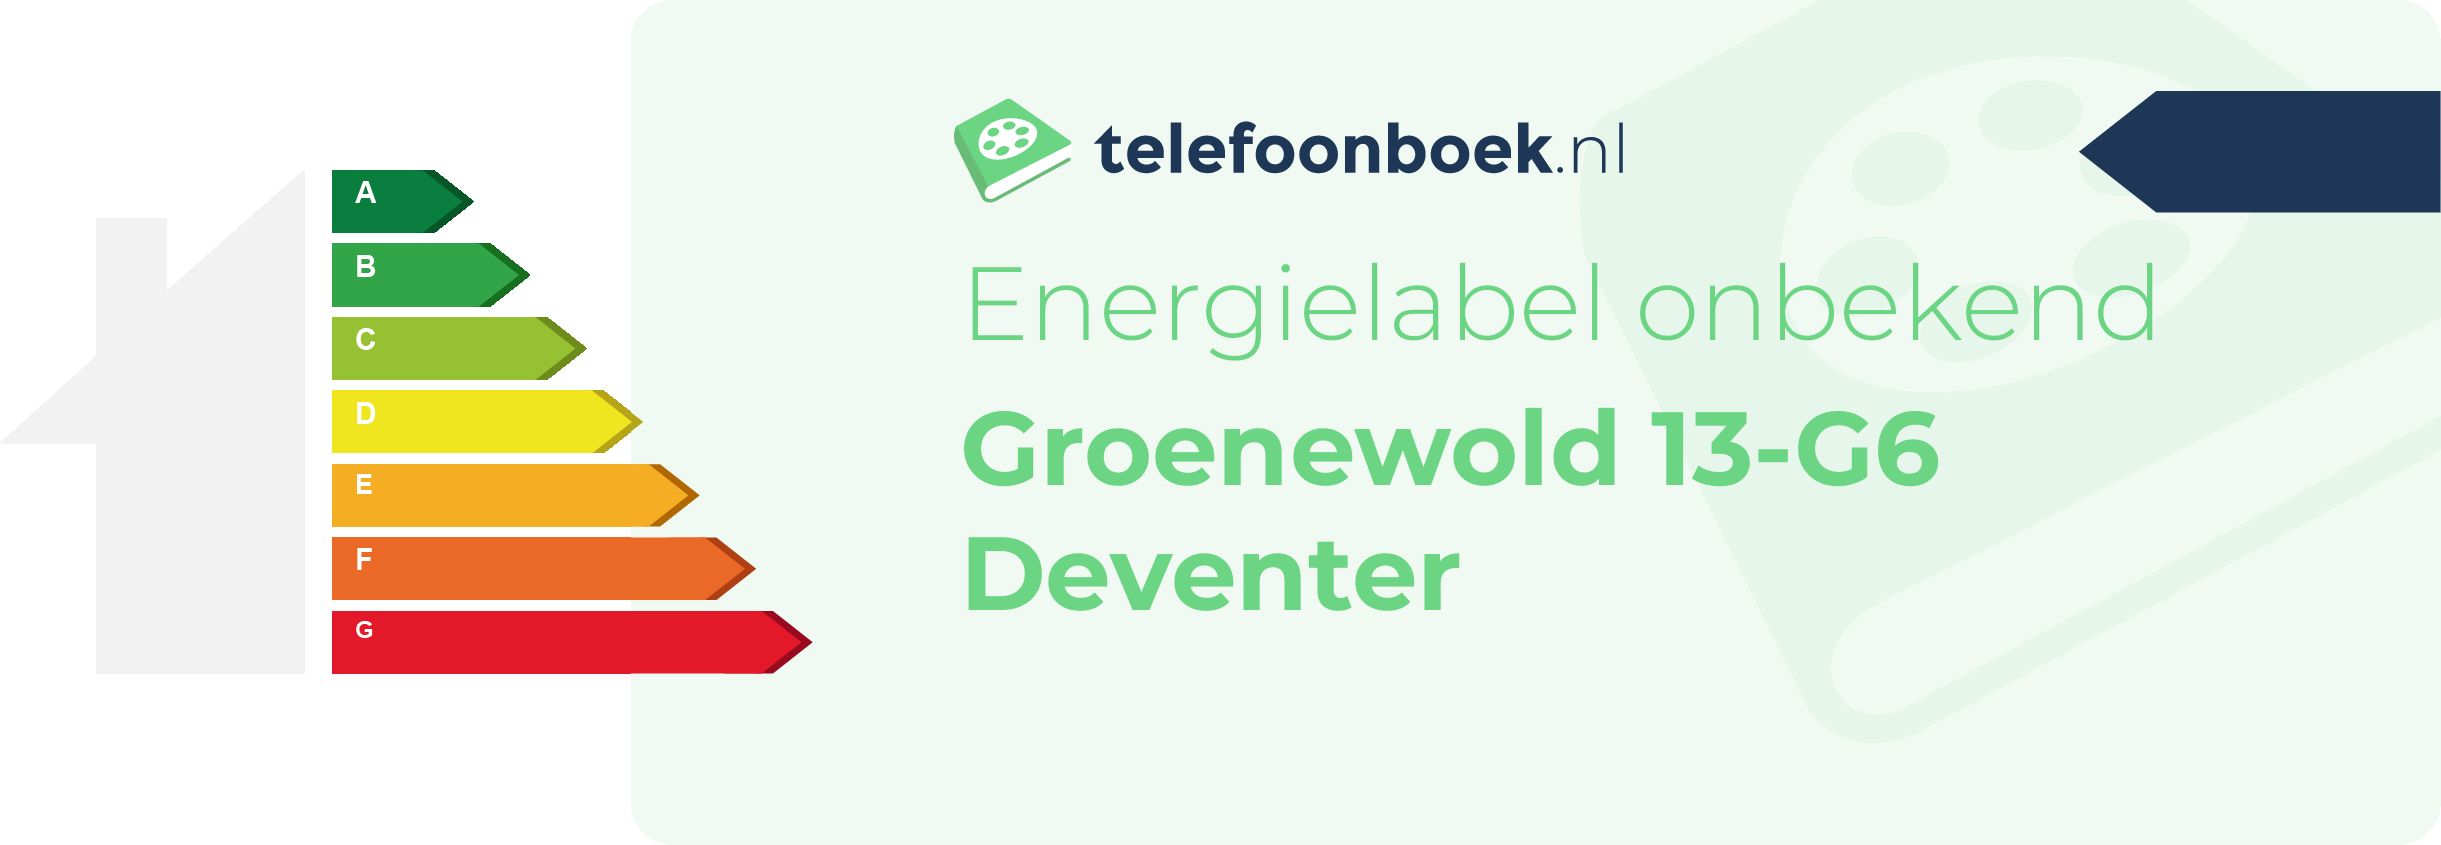 Energielabel Groenewold 13-G6 Deventer